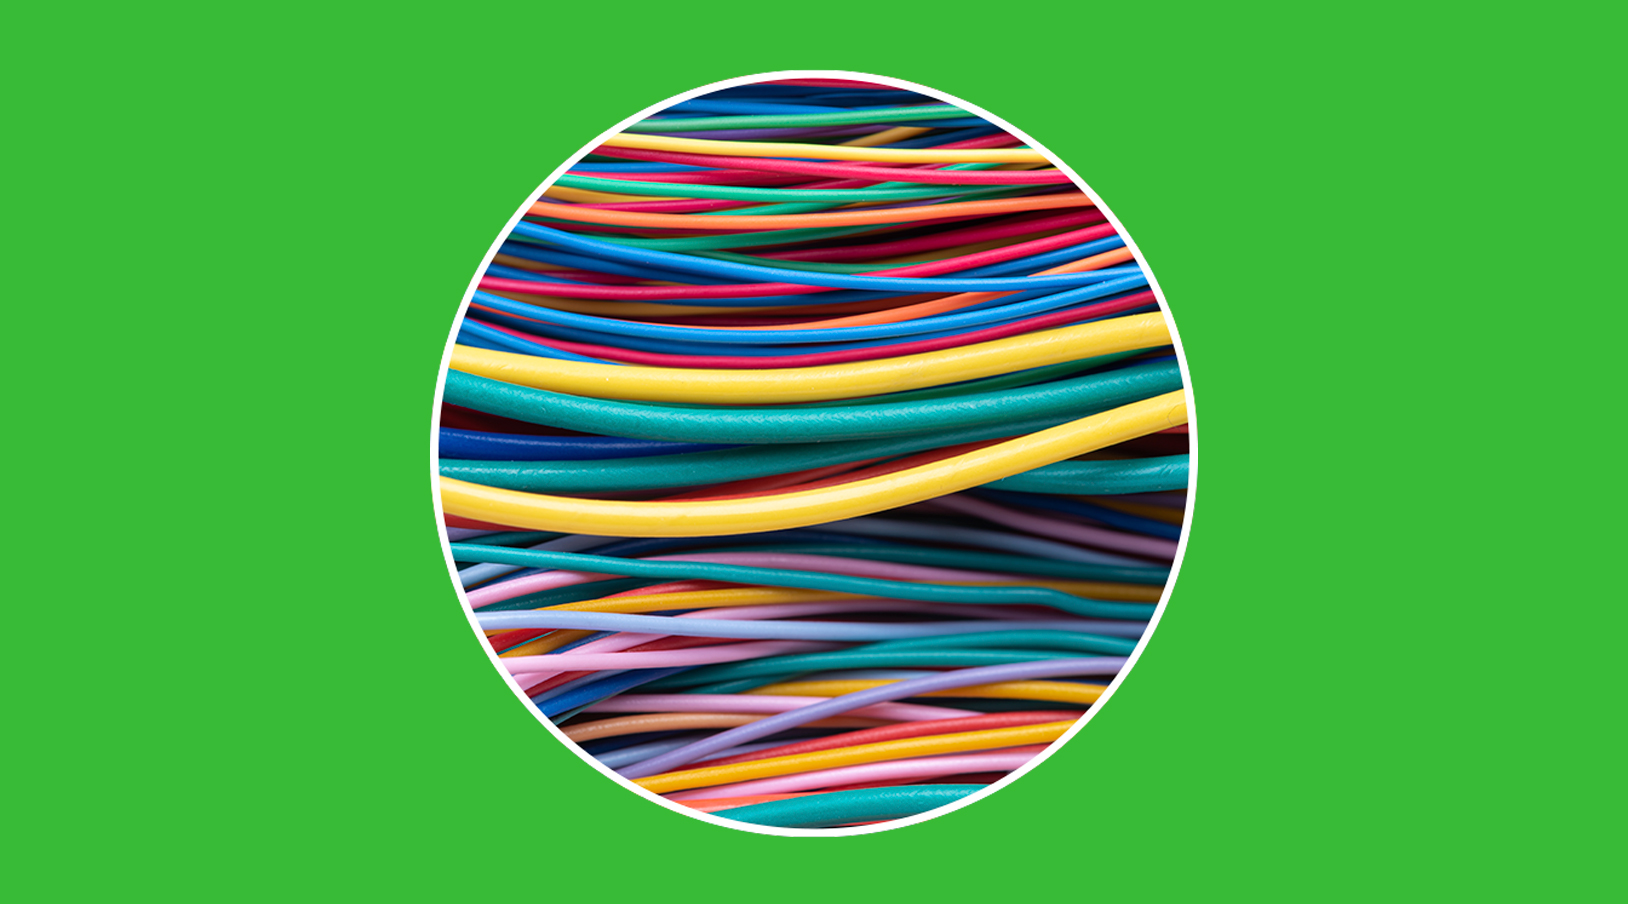 Tipos de cables eléctricos: cómo diferenciarlos por colores